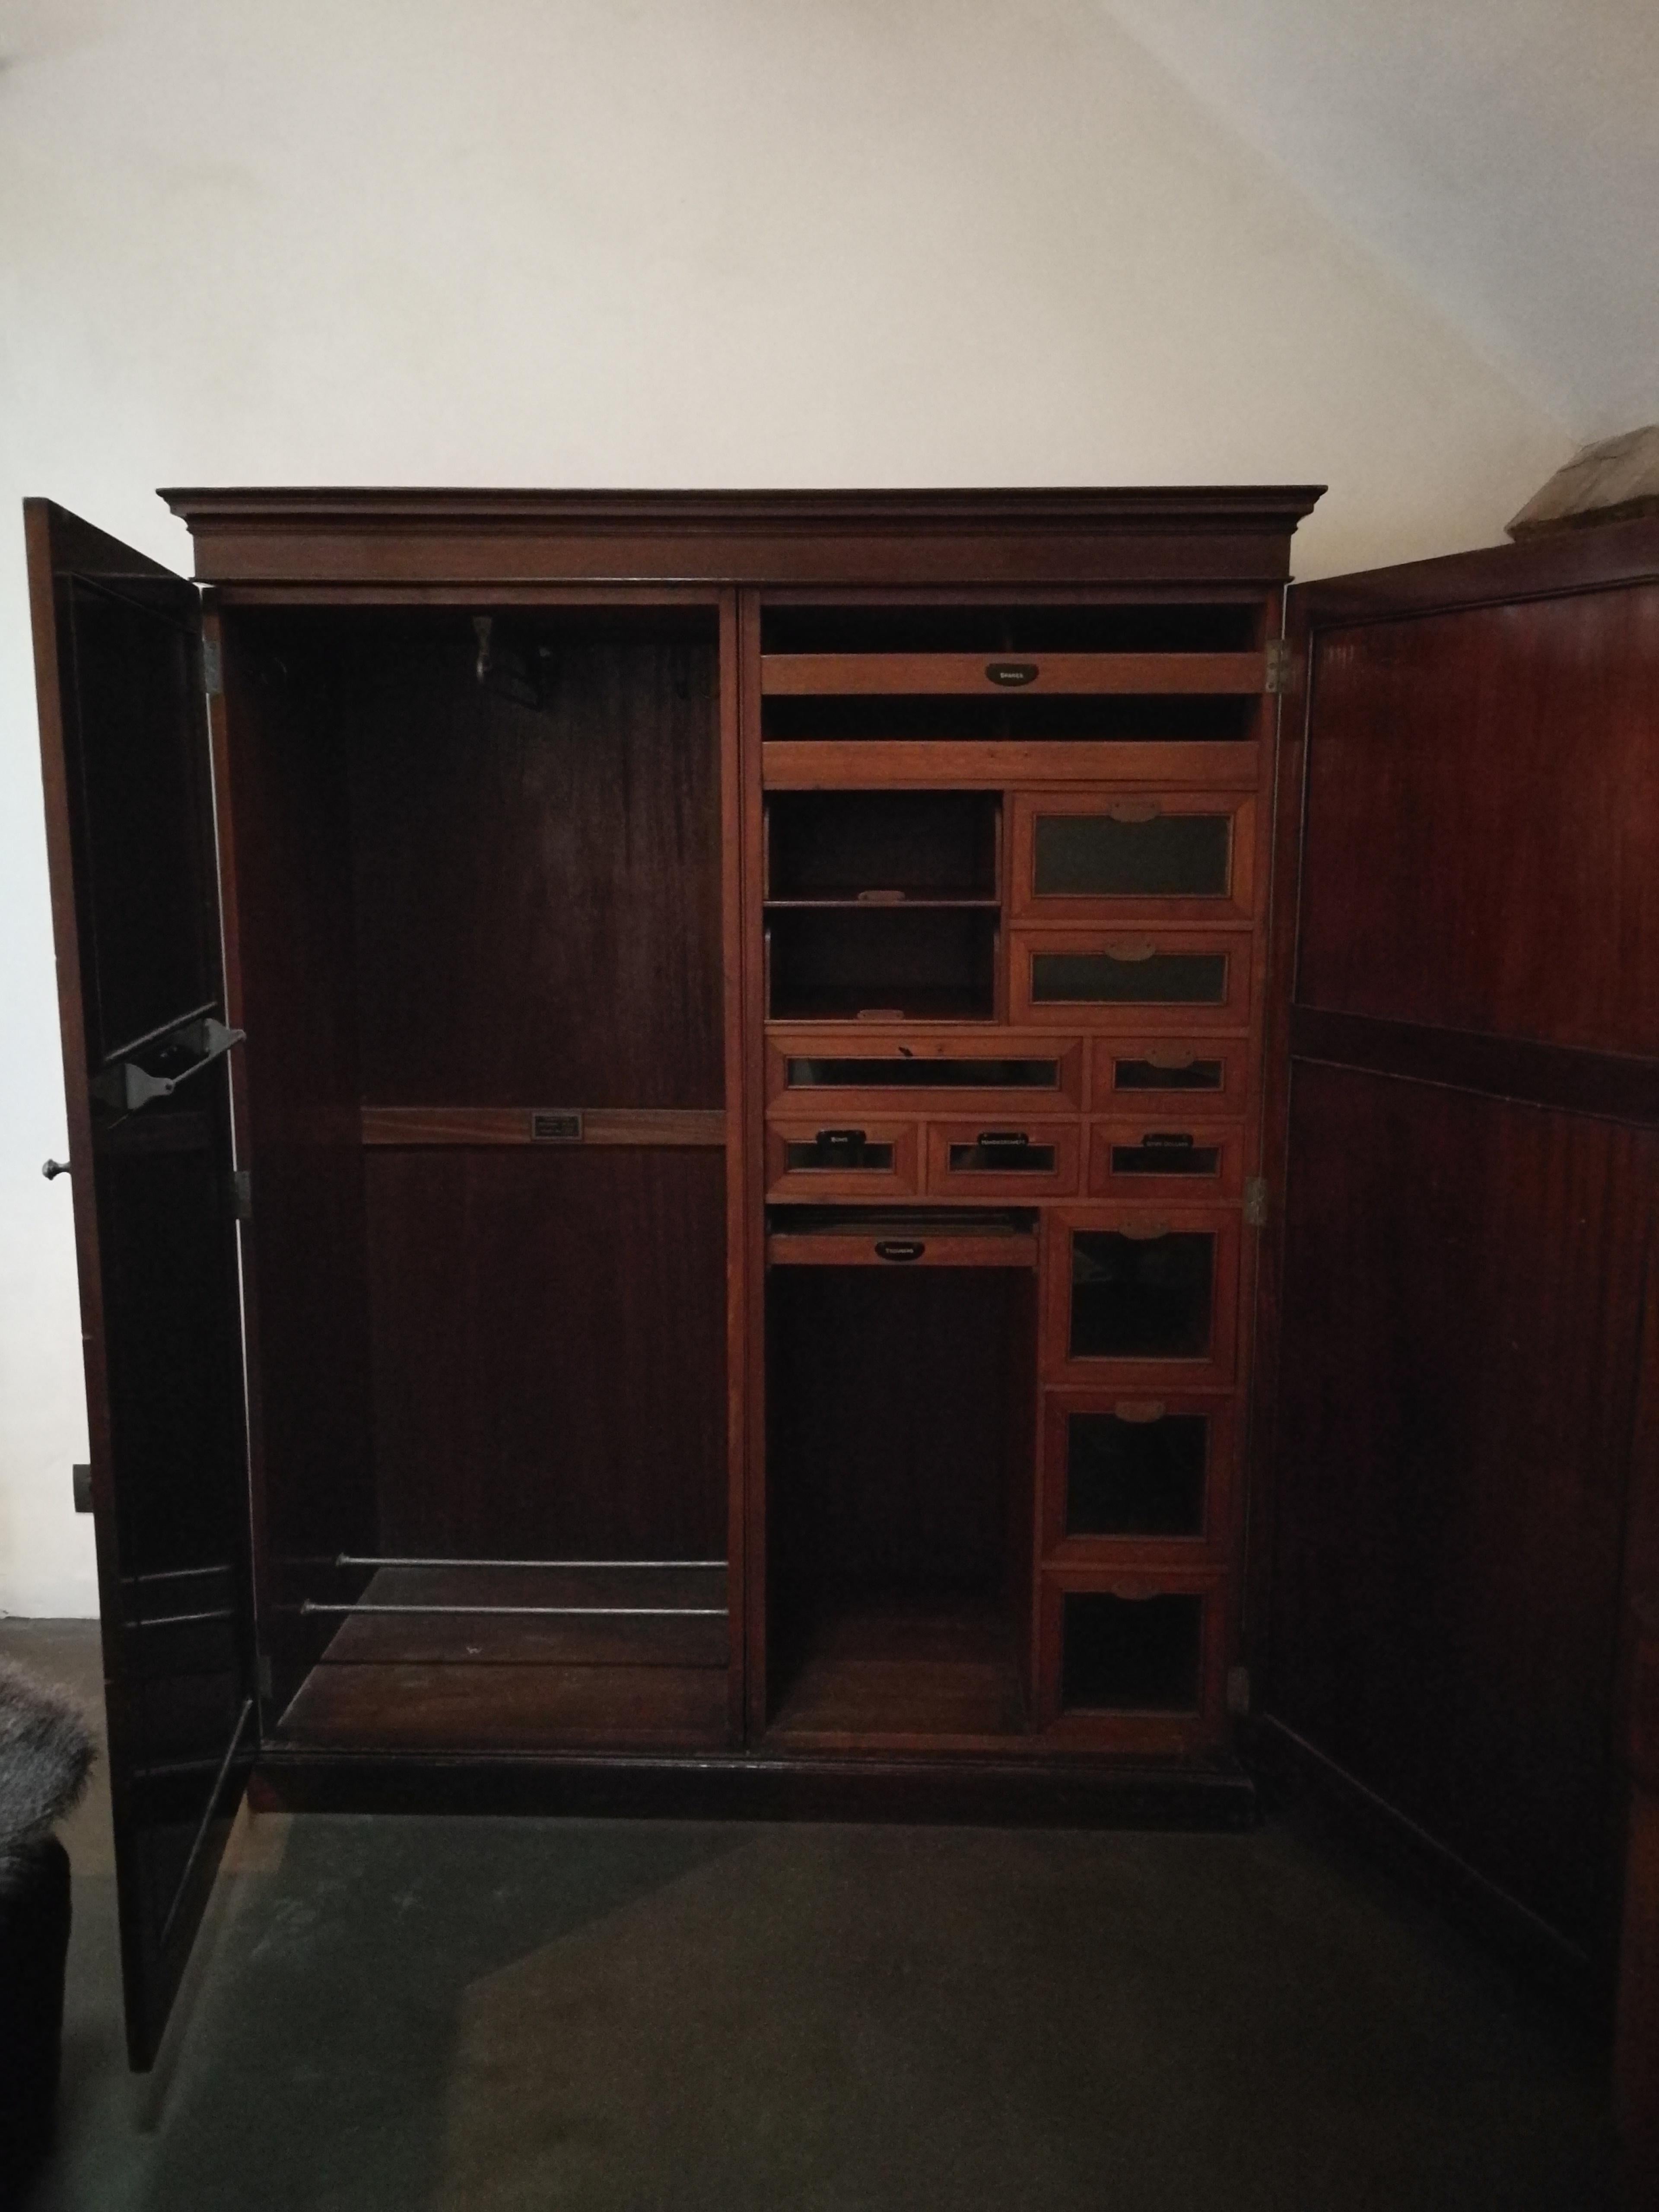 Dieser originale Kleiderschrank hat zwei Türen mit originalen Griffen. Das Innere dieser Kommode besteht aus mehreren Schubladen, die jeweils nach ihrem Verwendungszweck benannt sind.
 